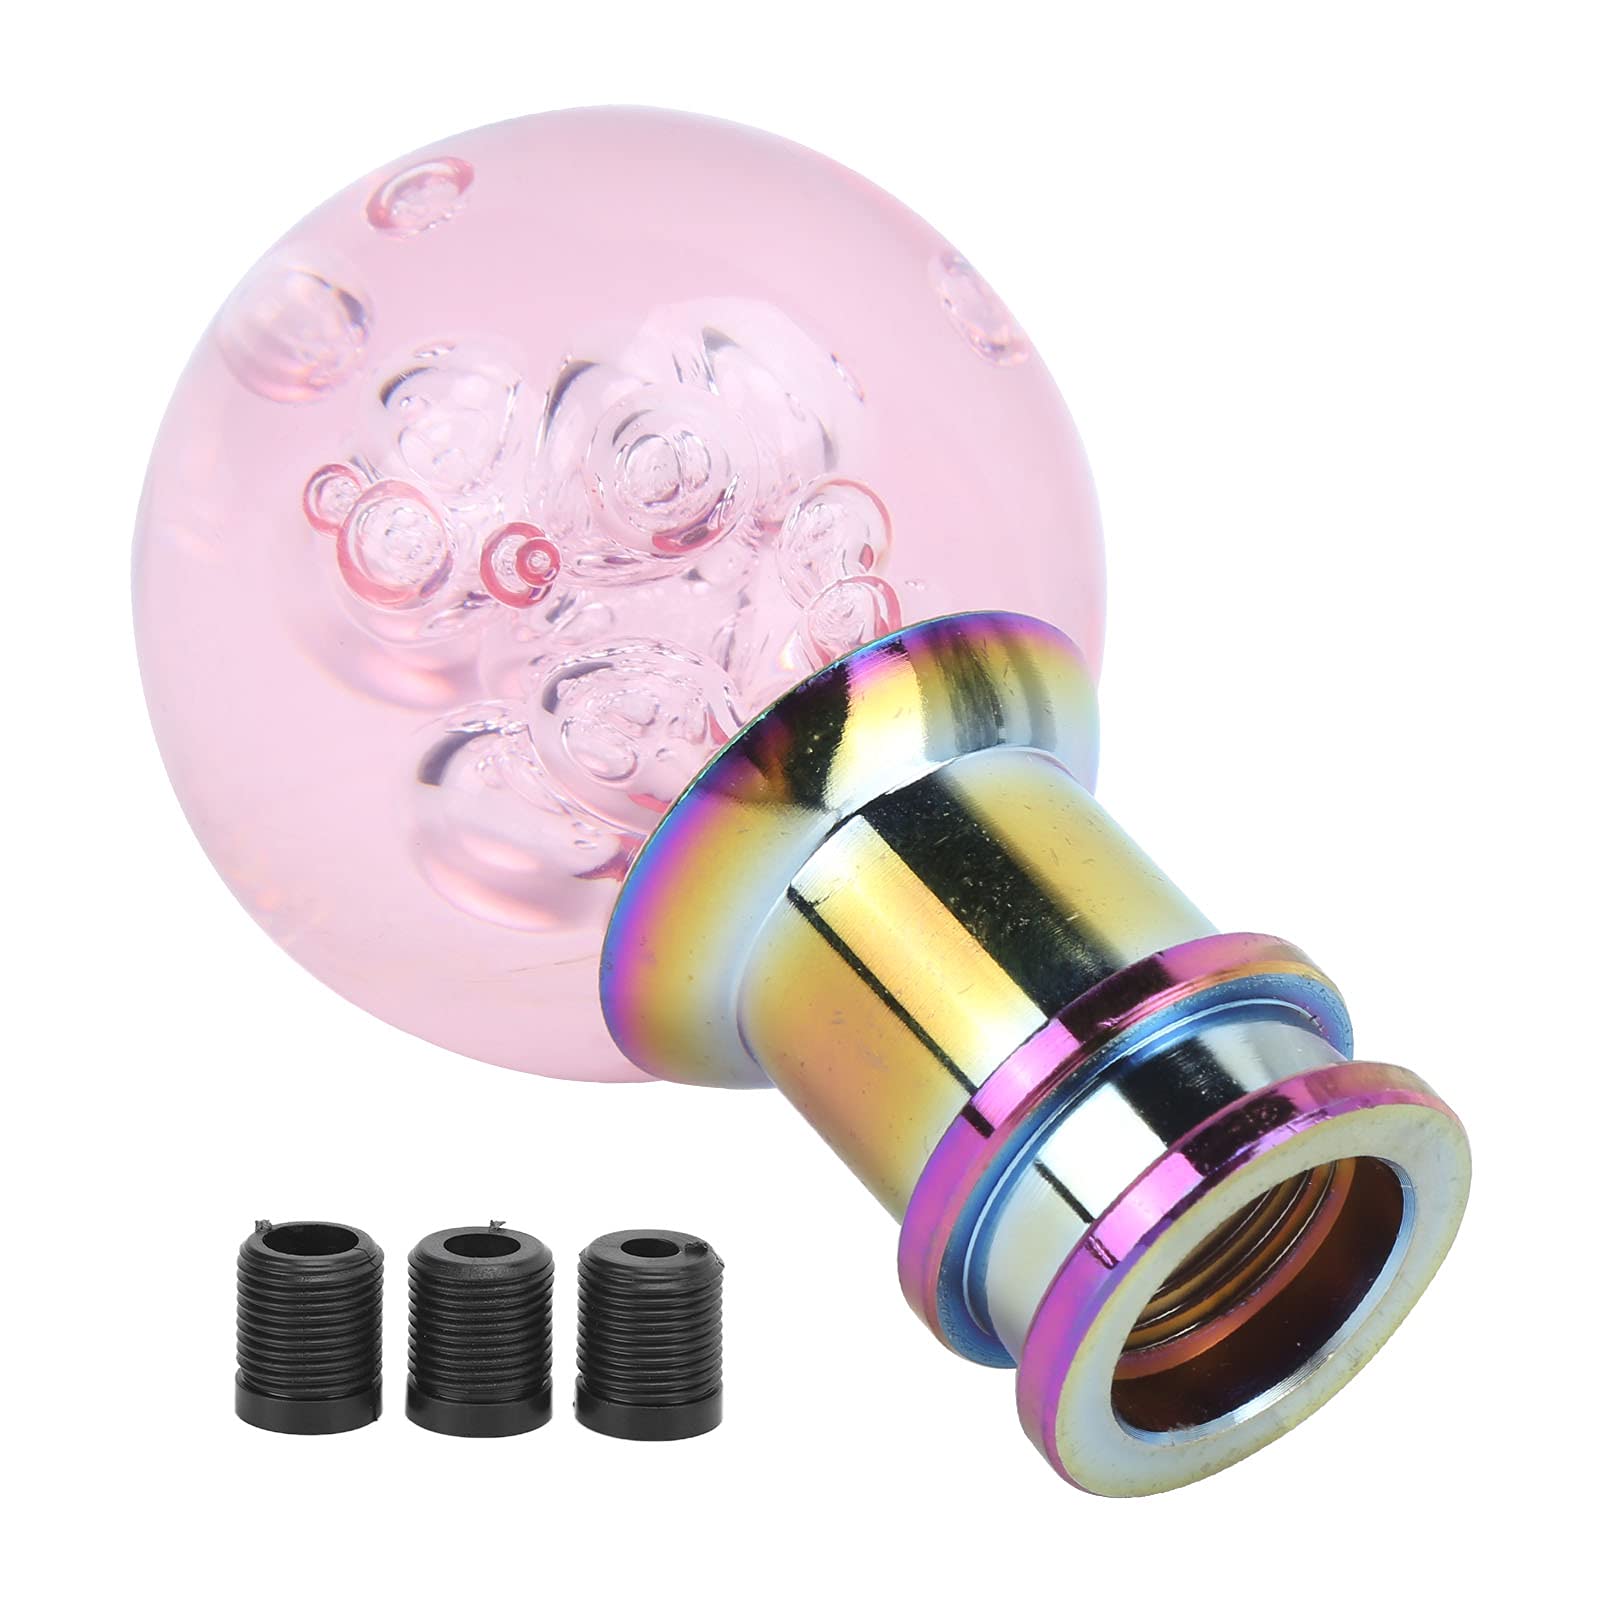 Akozon Schaltknauf, Universal Pink Crystal Bubble Manueller Schaltknauf Schaltknauf Shifter mit 3 Gewindeadaptern 8mm, 10mm, 12mm von Akozon